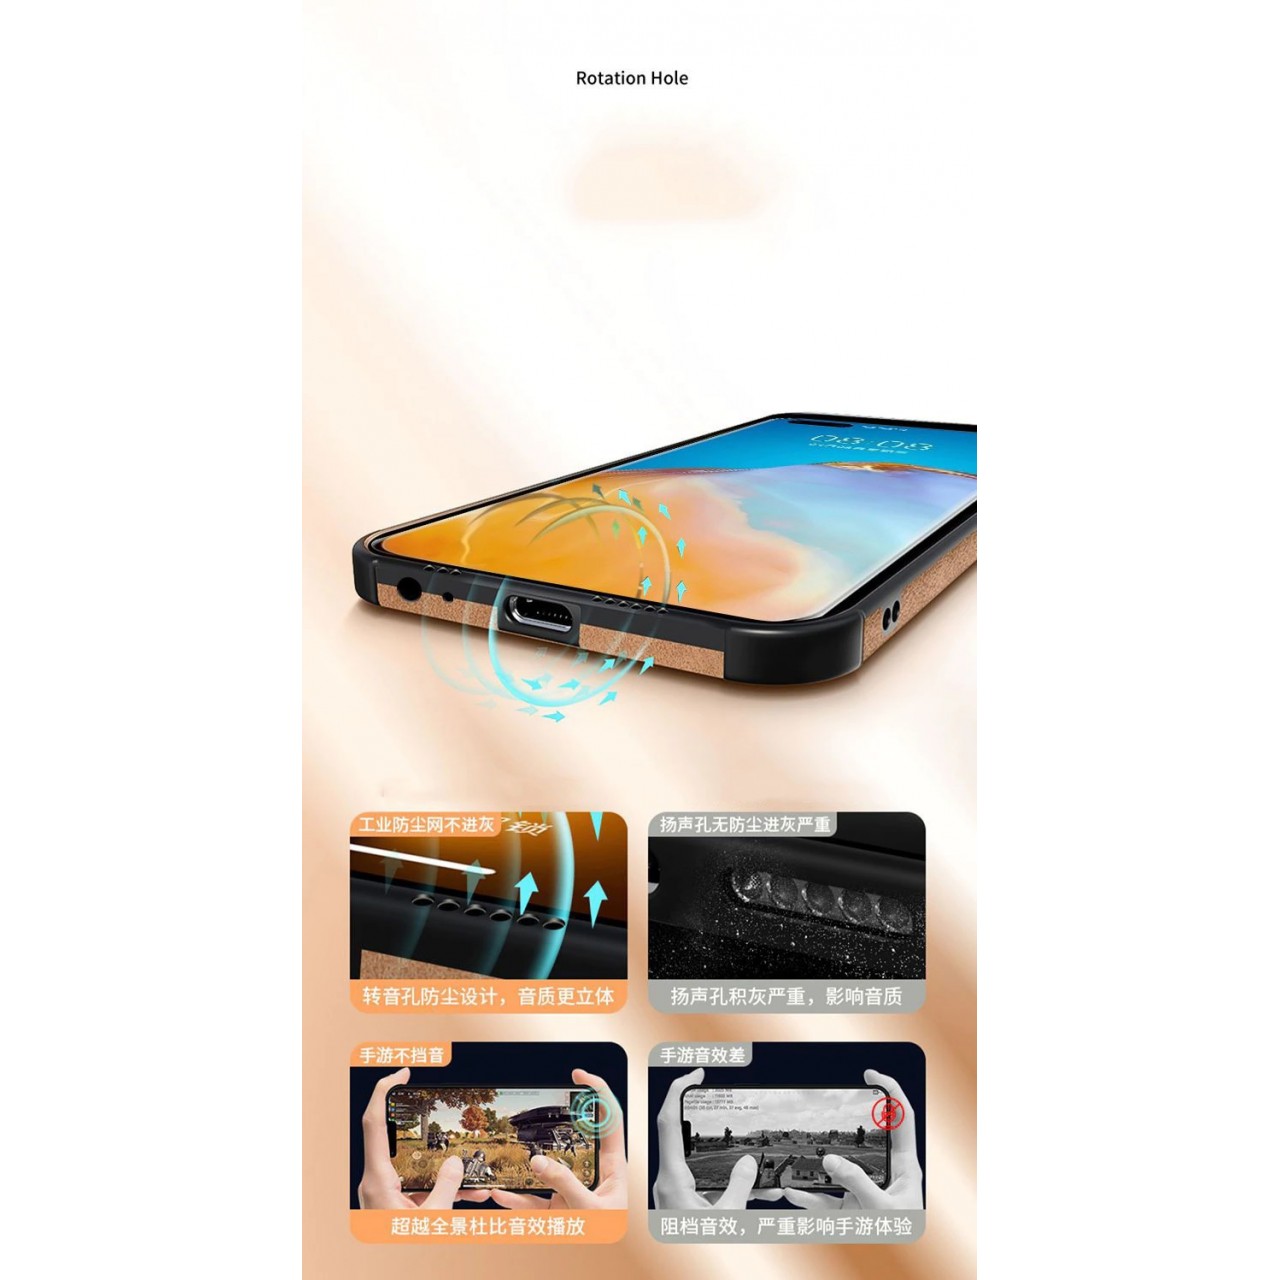 Θήκη με προστασία κάμερας Shockproof Lampskin Leather BackCase iPhone 13 Pro Max - Sky Blue